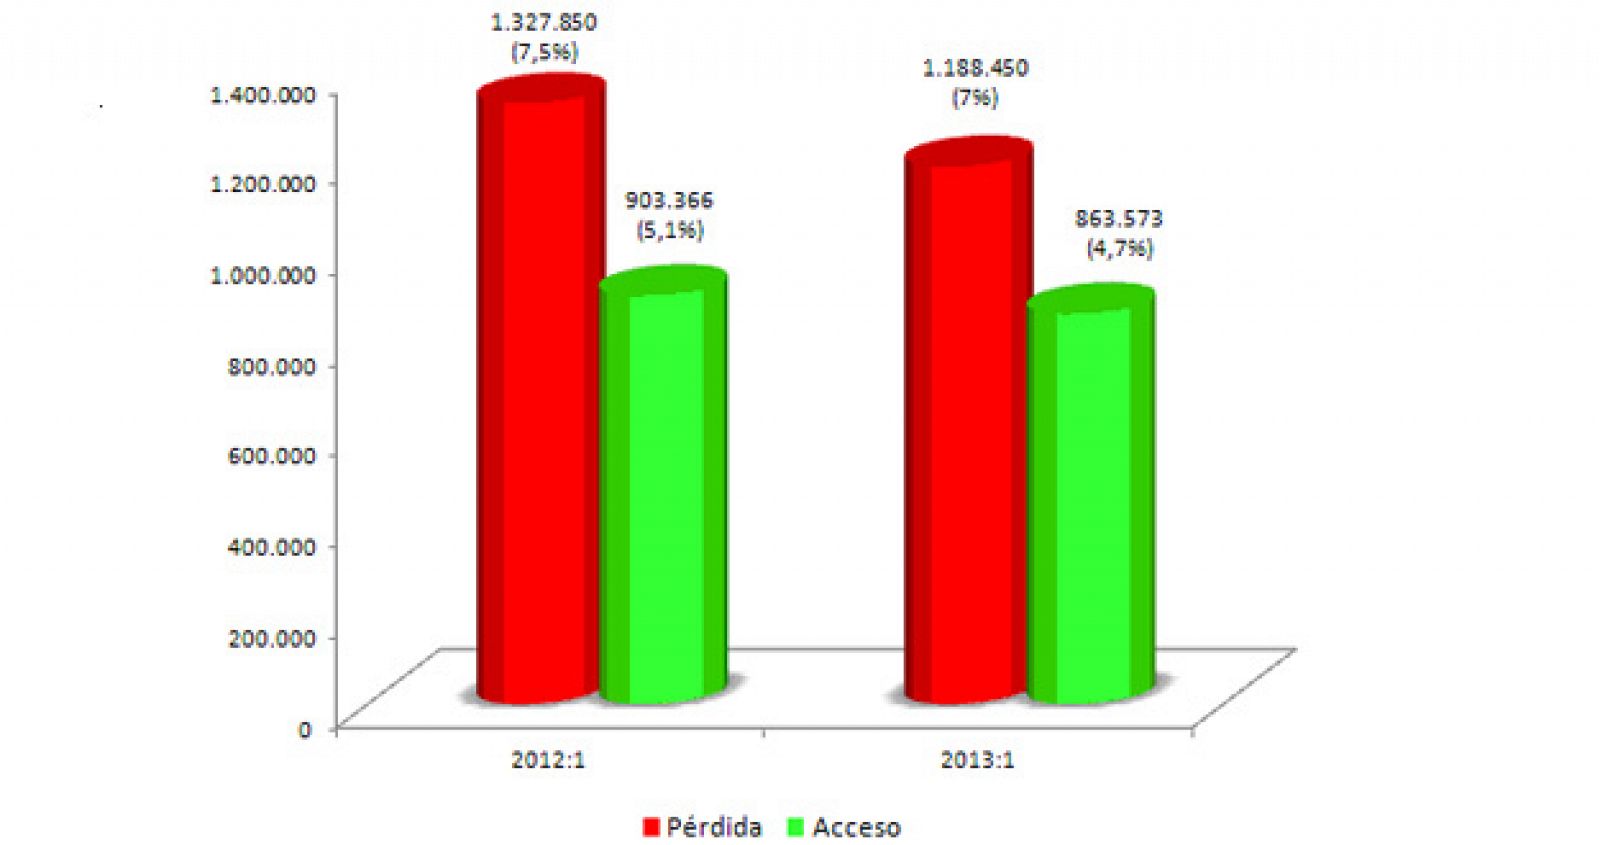 Destrucción de empleo neta en el primer trimestre de 2013 respecto al mismo periodo de 2012.